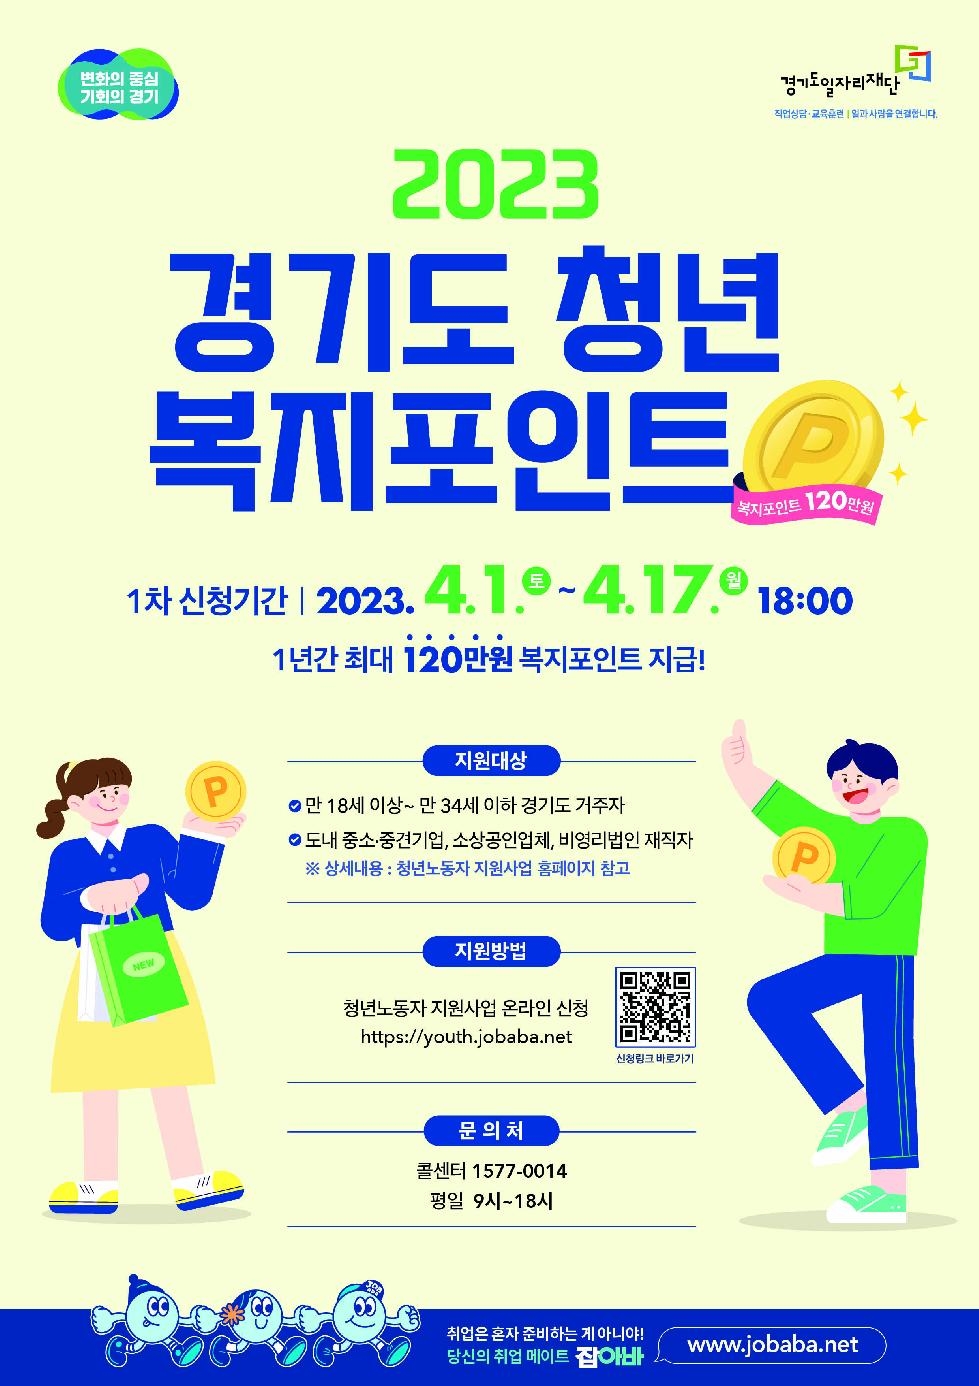 경기도, 연간 120만 원 ‘청년 복지포인트’ 1차 참여자 1만2천명 모